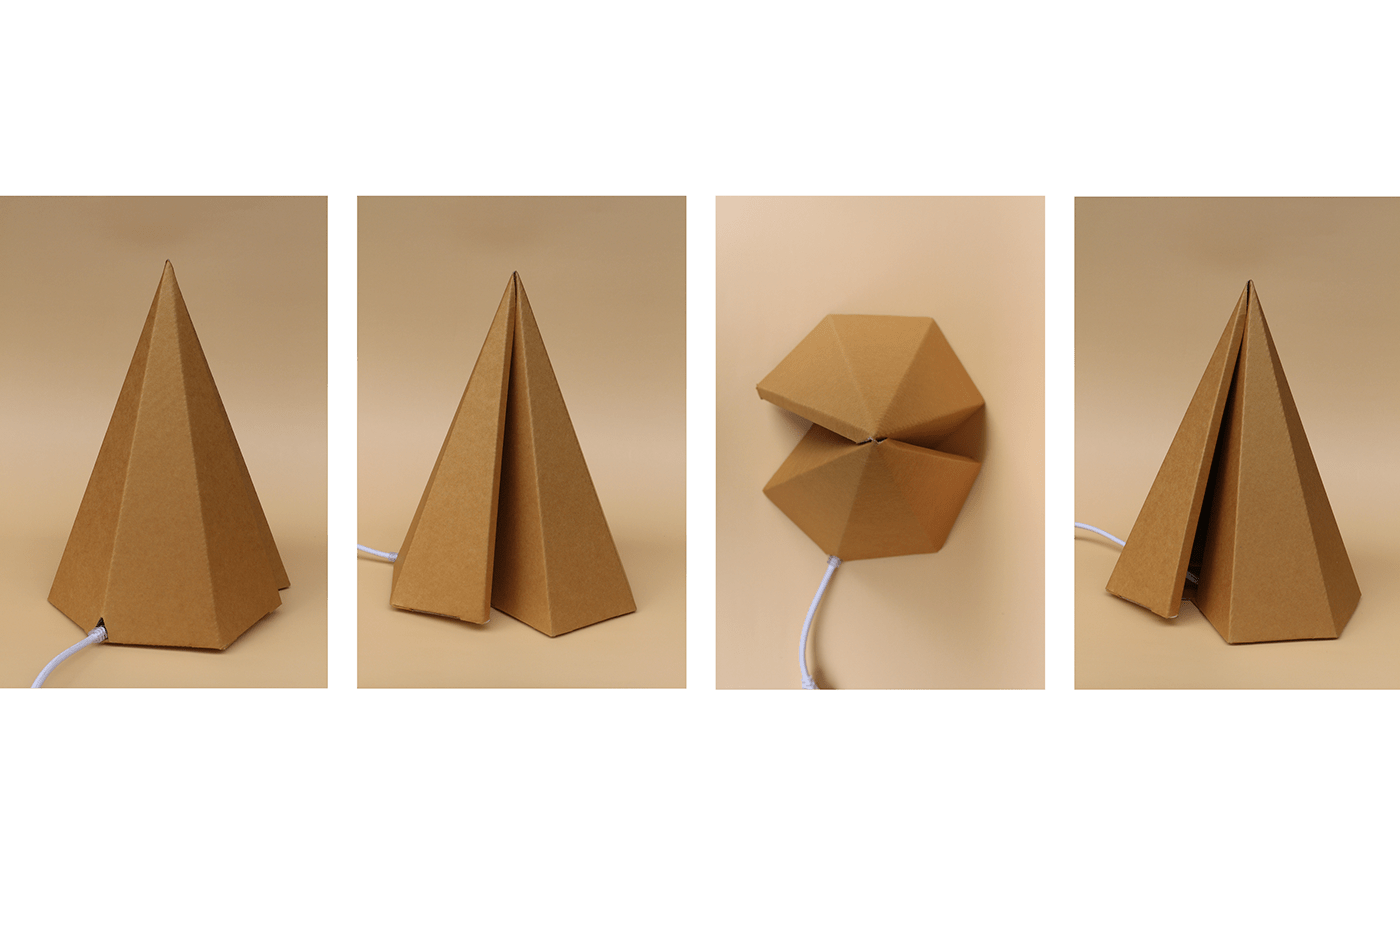 Lamp corrugated cardboard paper DIY